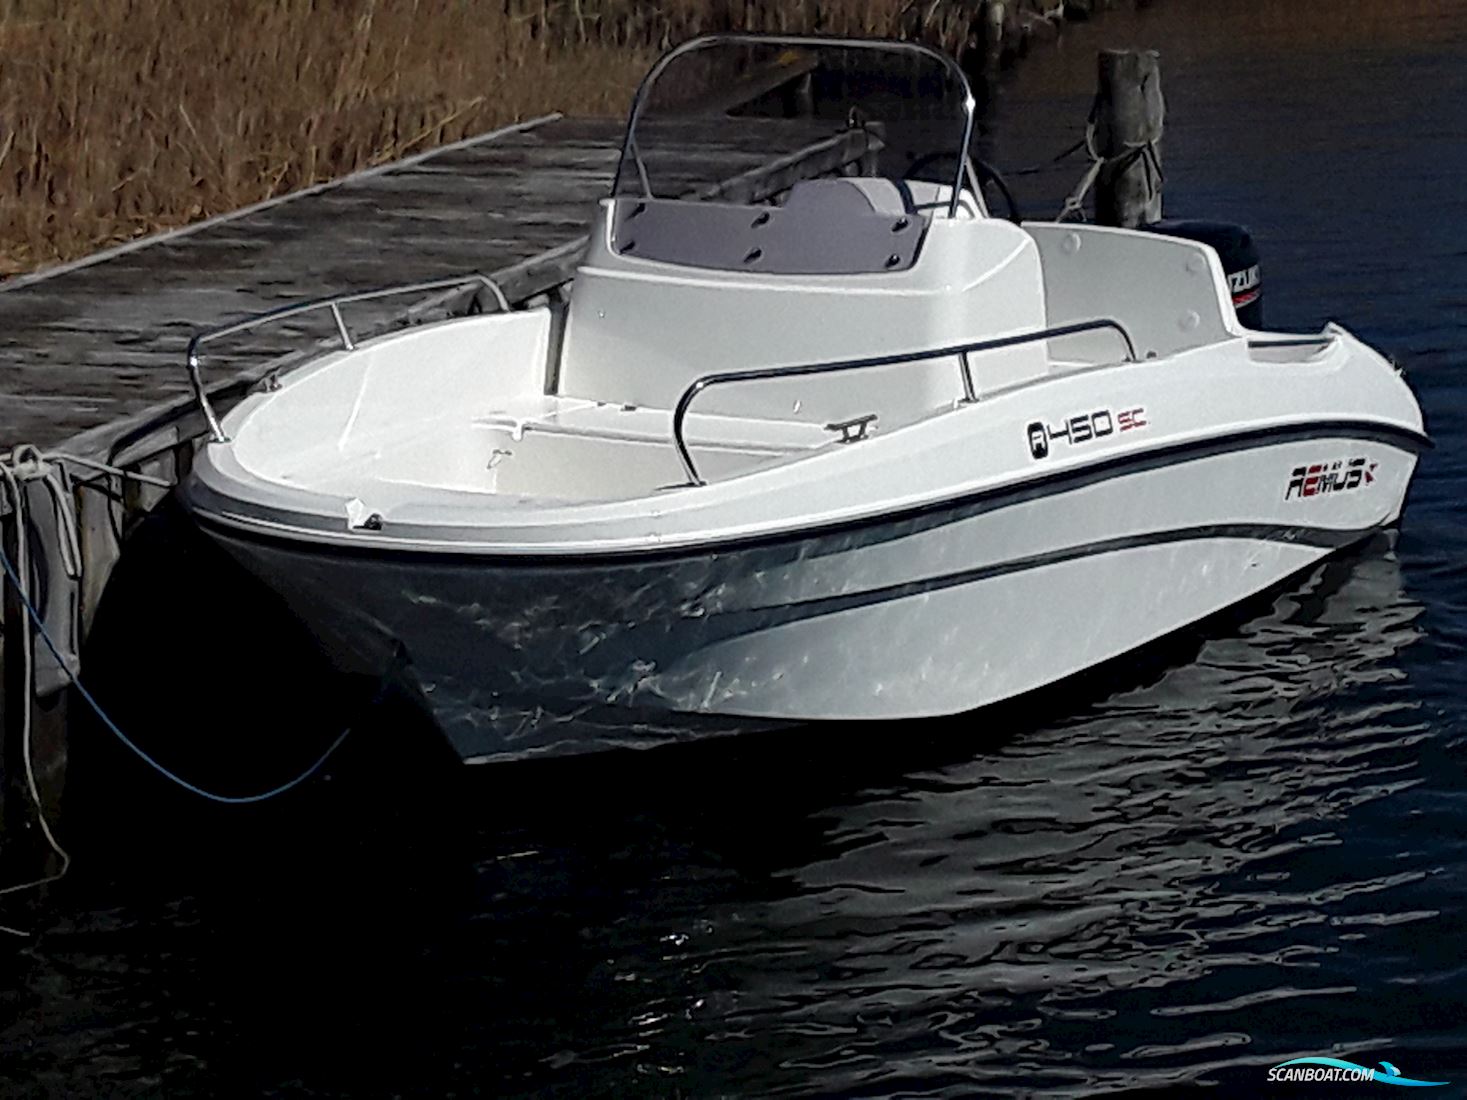 Remus 450 Styrepultbåd Motorbåt 2019, med Suzuki DF60 Atl motor, Danmark